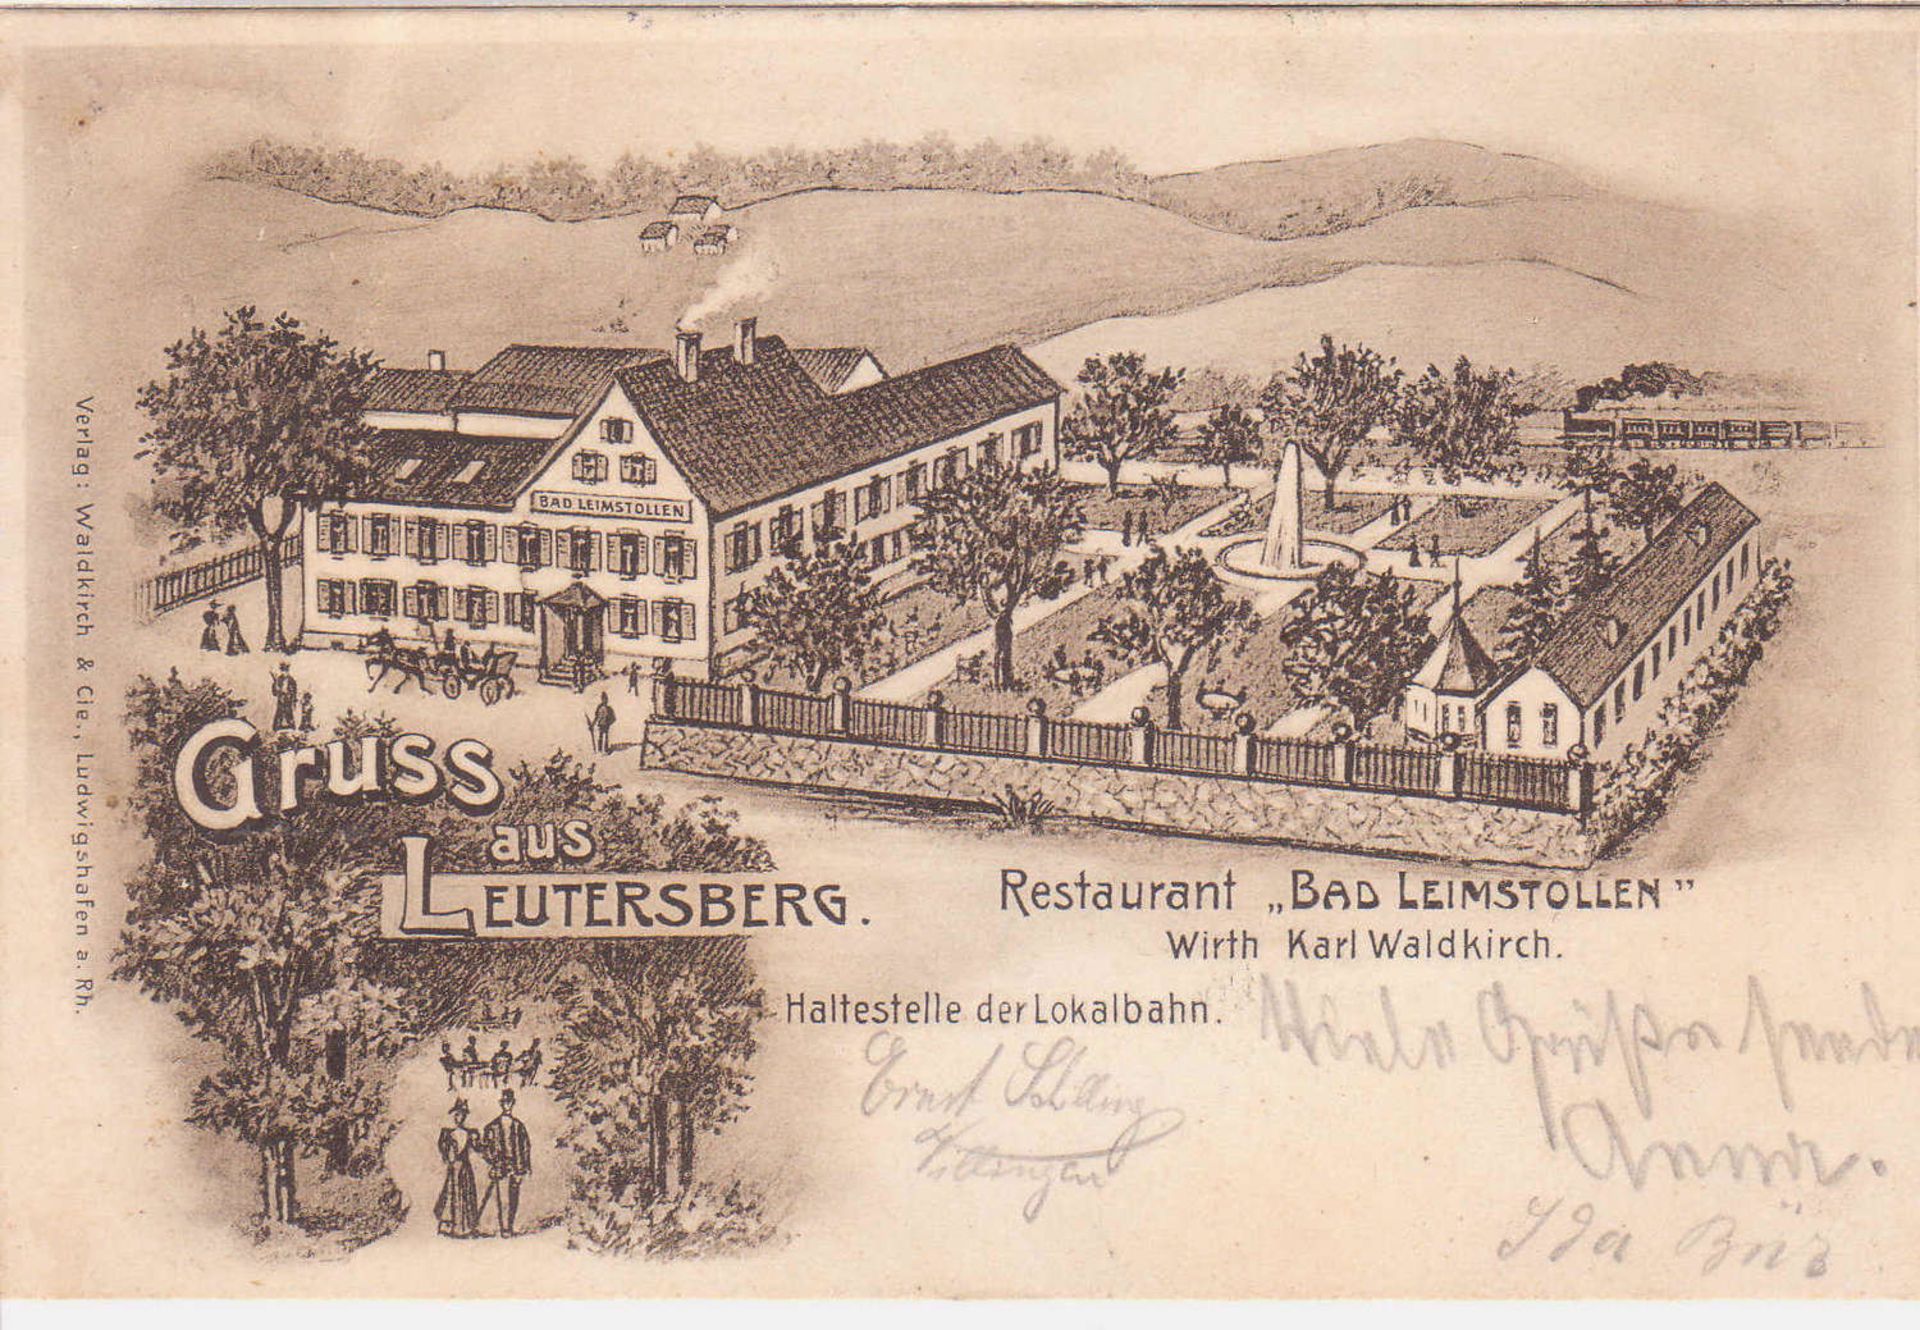 Ansichtskarte "Gruss aus Leutersberg - Restaurant Bad Leimstollen - Wirth Karl Waldkirch". 1905.